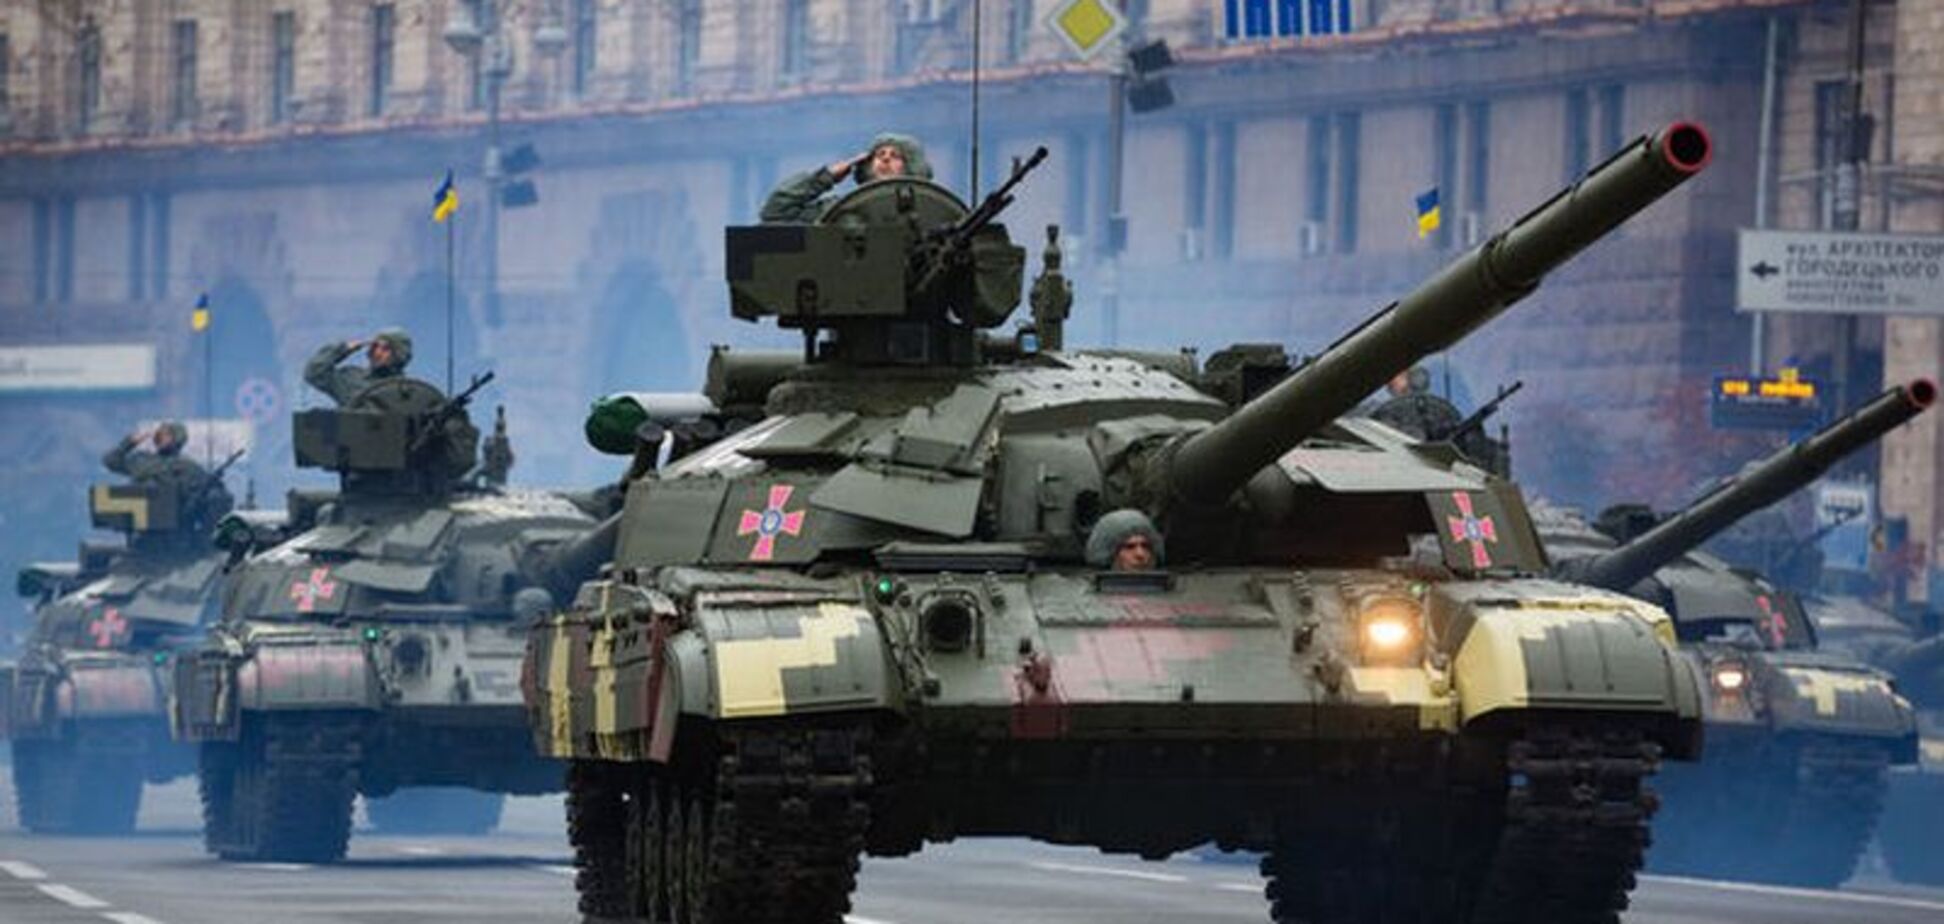 Оружие, которое видели избранные: что Украина покажет на параде ко Дню Независимости